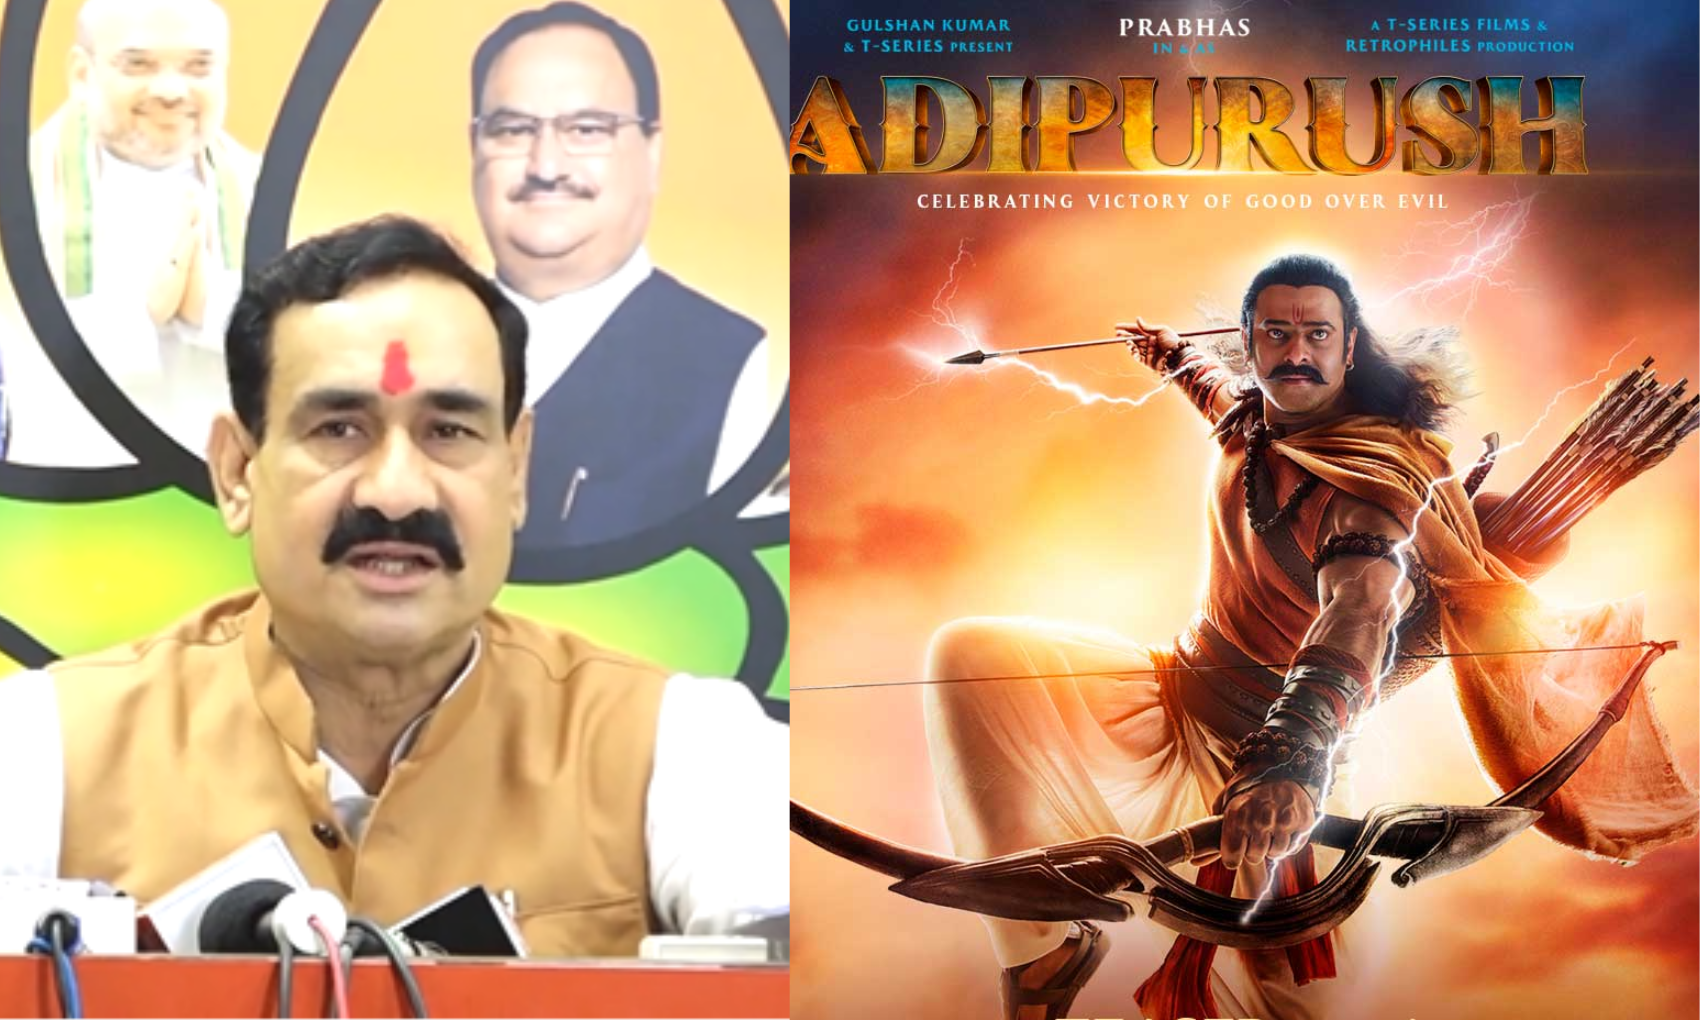 रामायण पर बनी फिल्म ‘आदिपुरुष’ को लेकर बढ़ता जा रहा है विवाद! BJP नेता नरोत्तम मिश्रा करेंगे कानूनी कार्रवाई